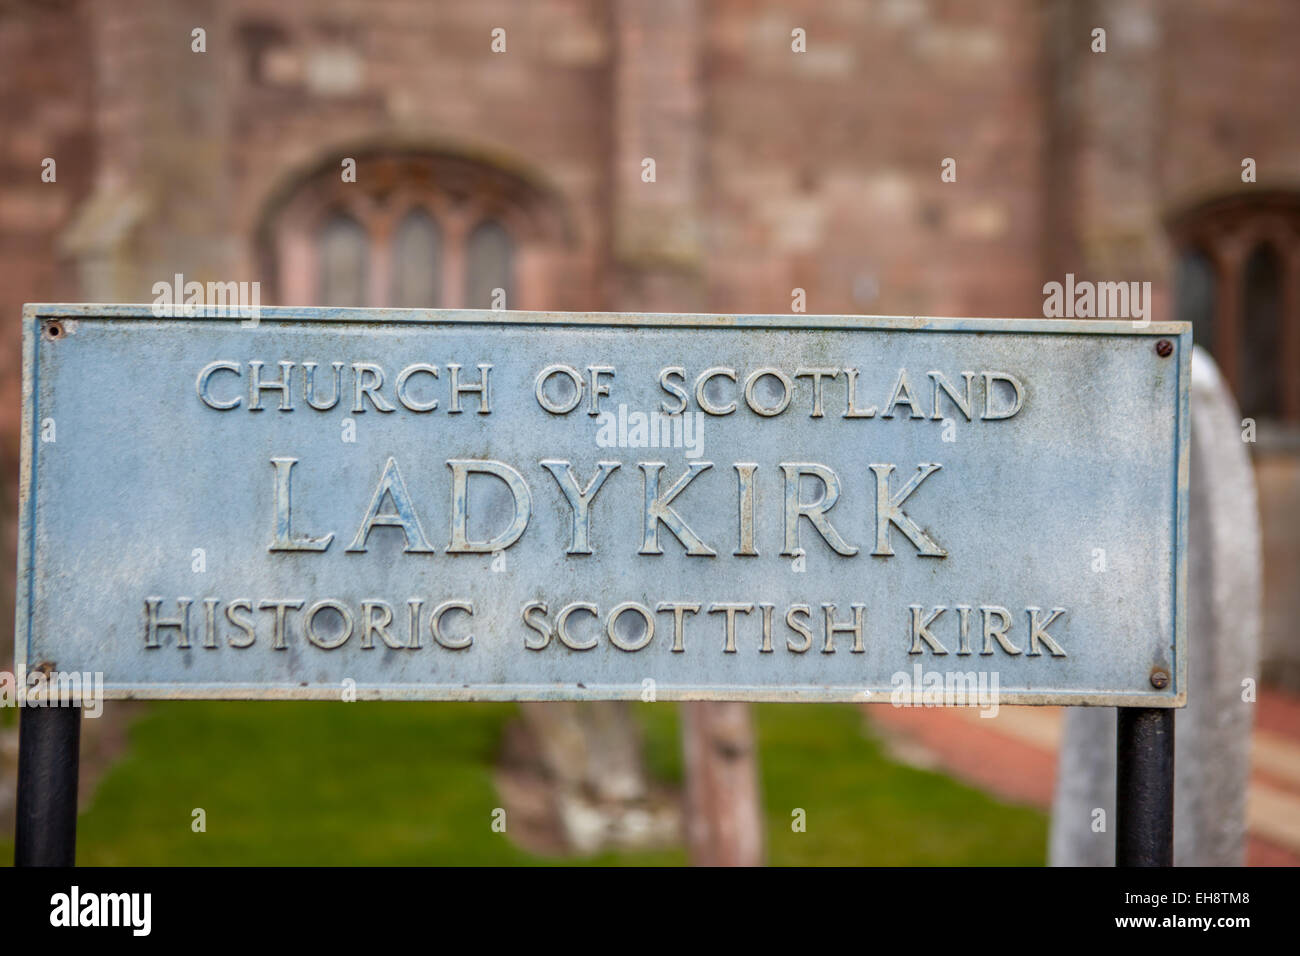 Historique ladykirk kirk écossais Banque D'Images